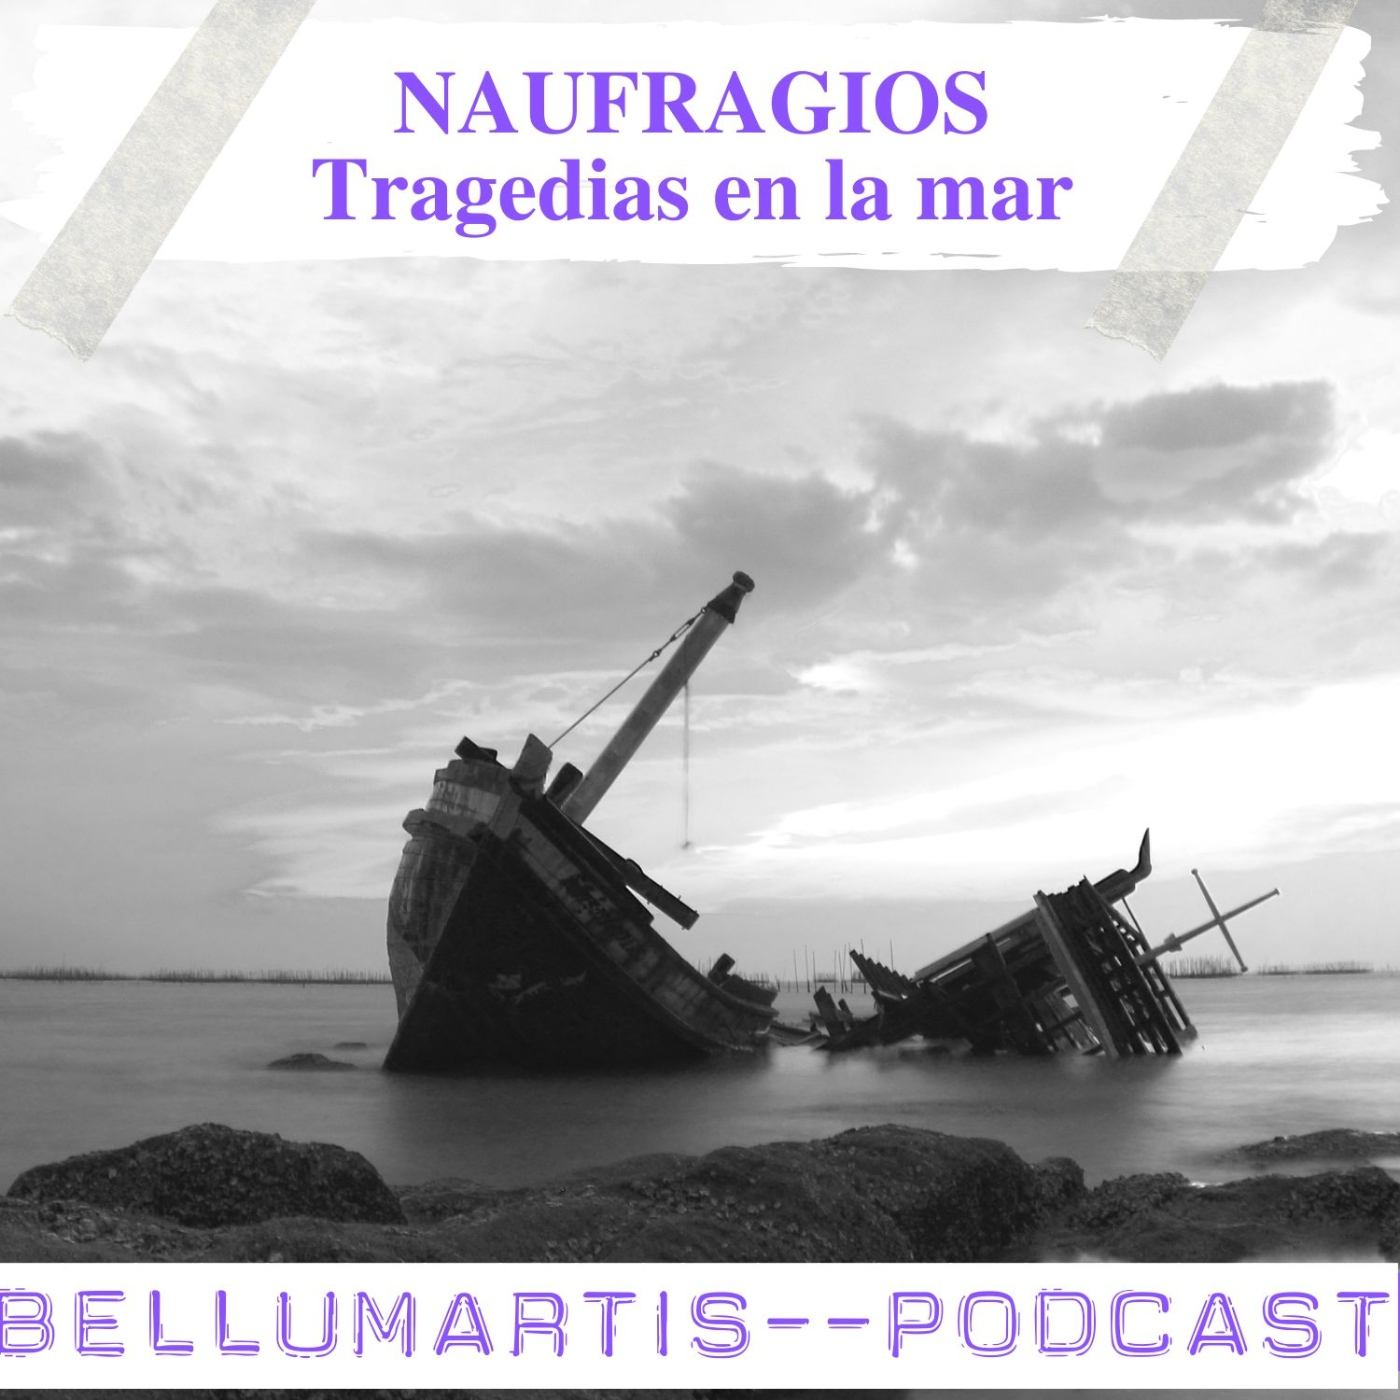 NAUFRAGIOS, tragedias en la Mar a través de los tiempos **Luis Mollá** - Acceso anticipado